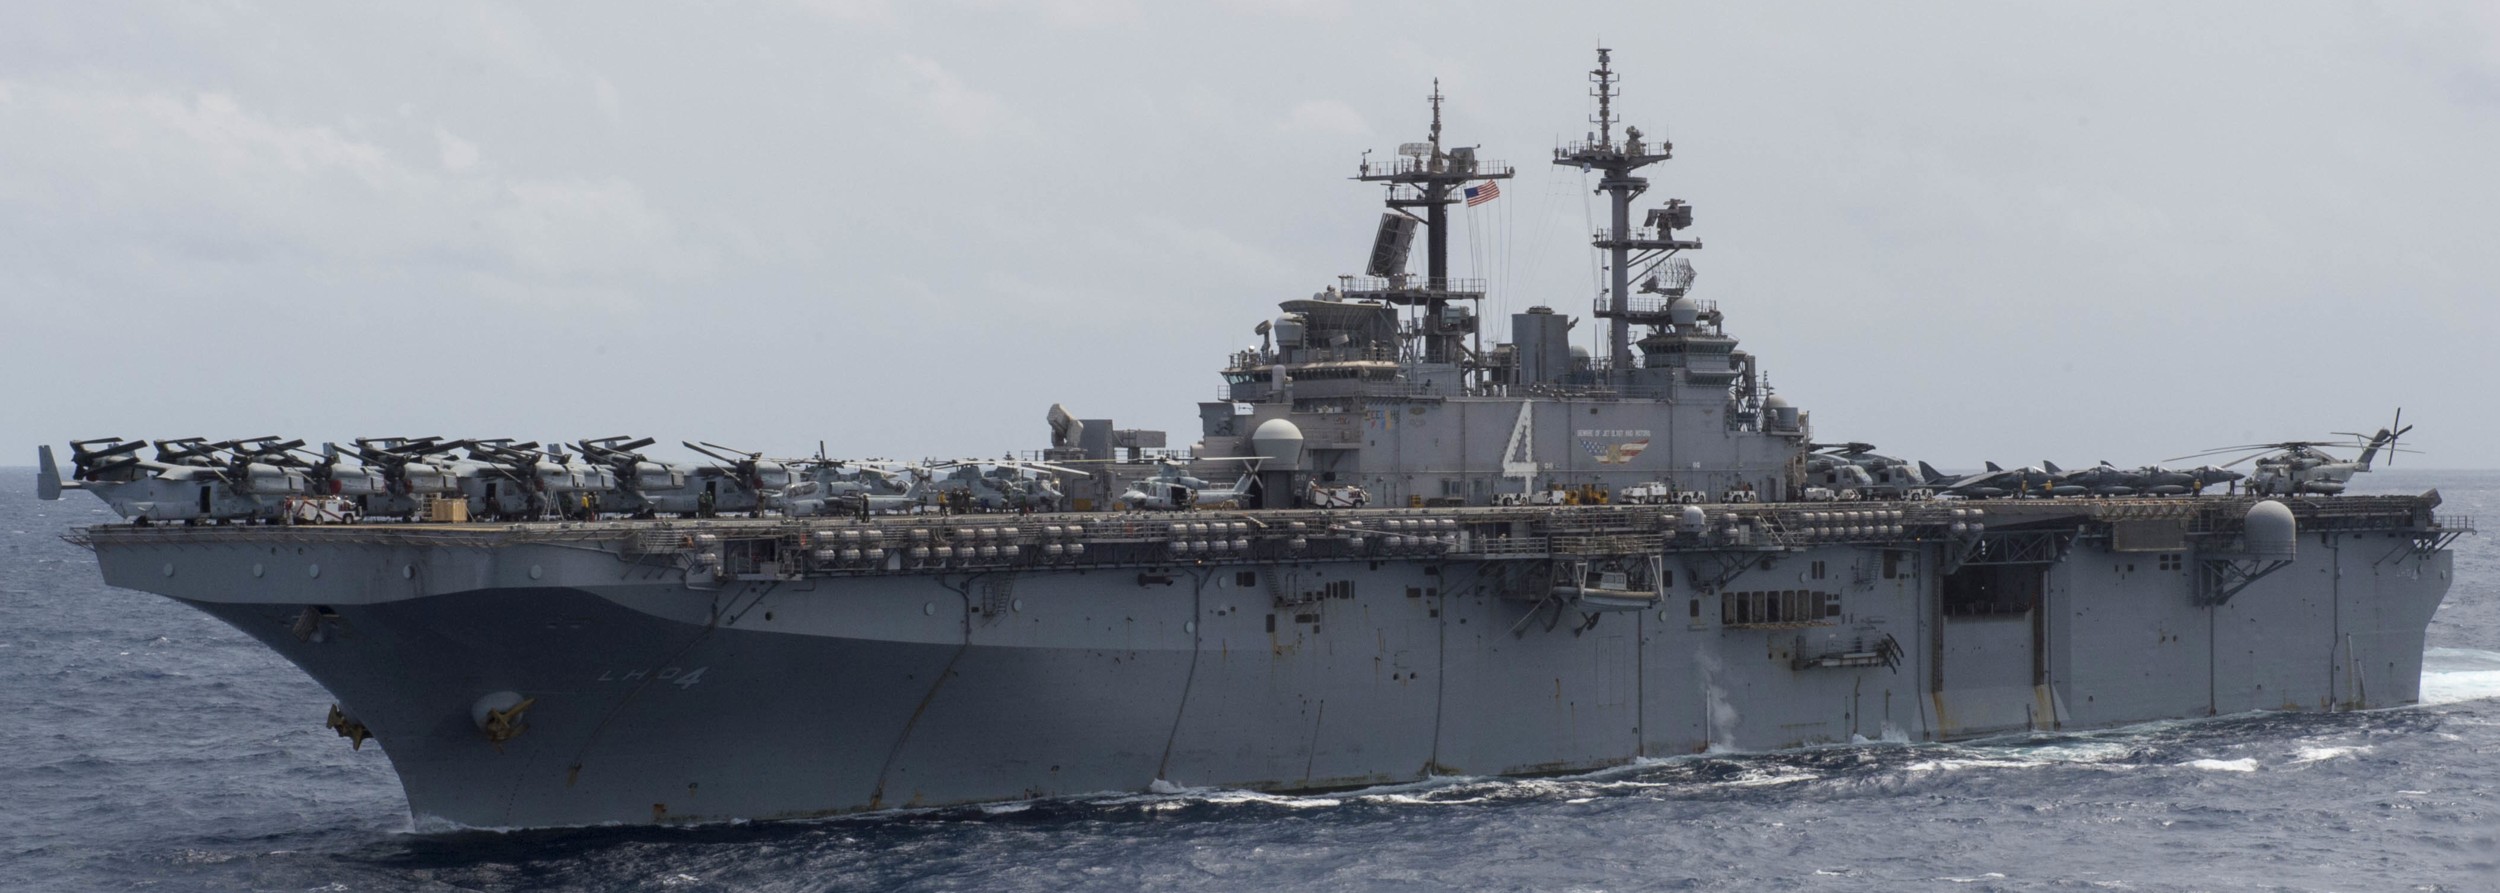 lhd-4 uss boxer wasp class amphibious assault ship dock landing us navy marines vmm-166 rein 115